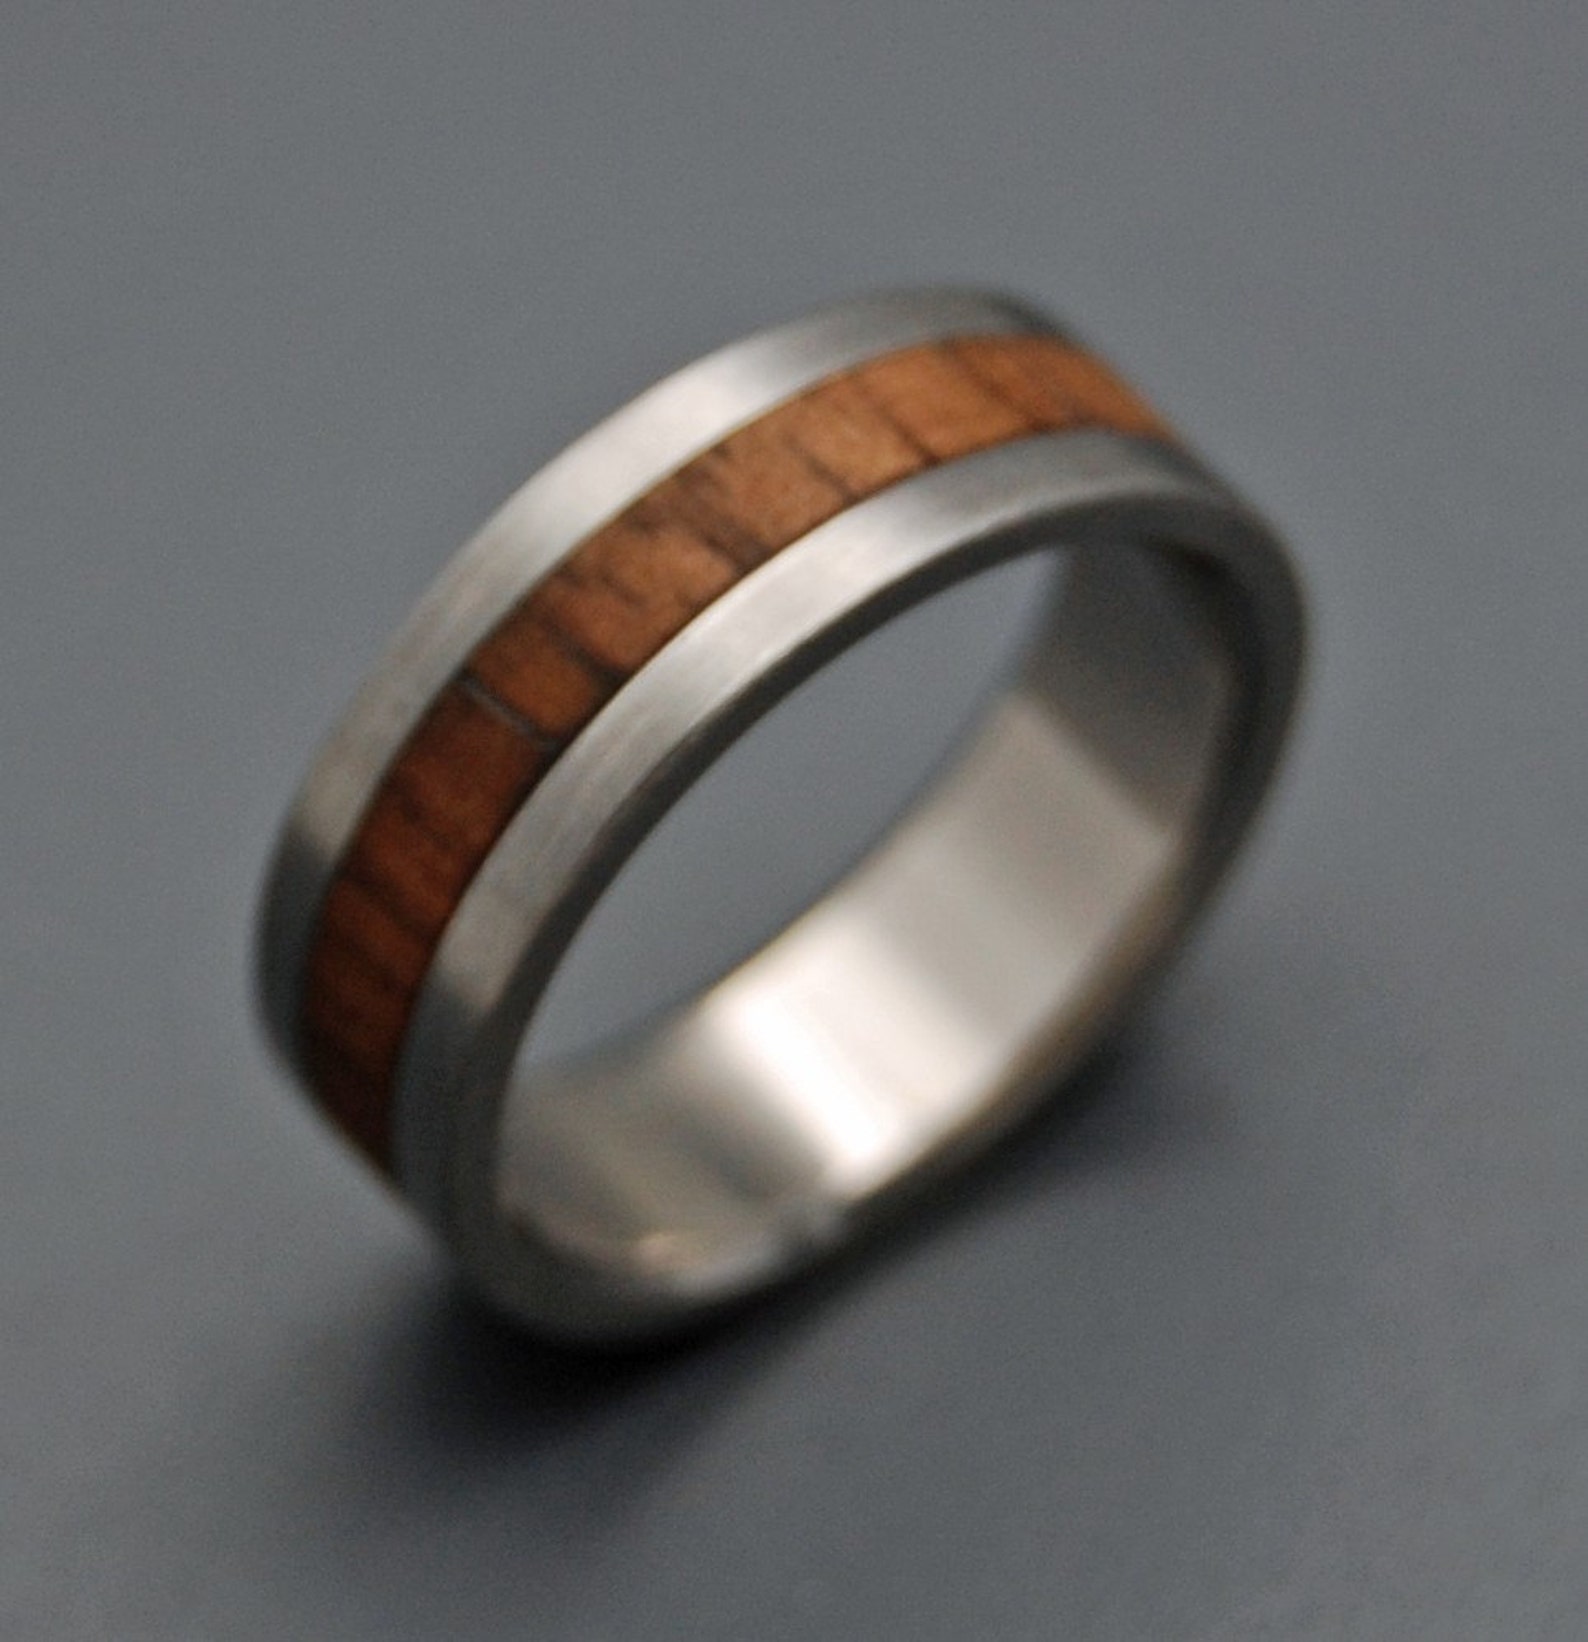 Wooden Wedding Rings Wood Rings Titanium Wedding Rings | Etsy